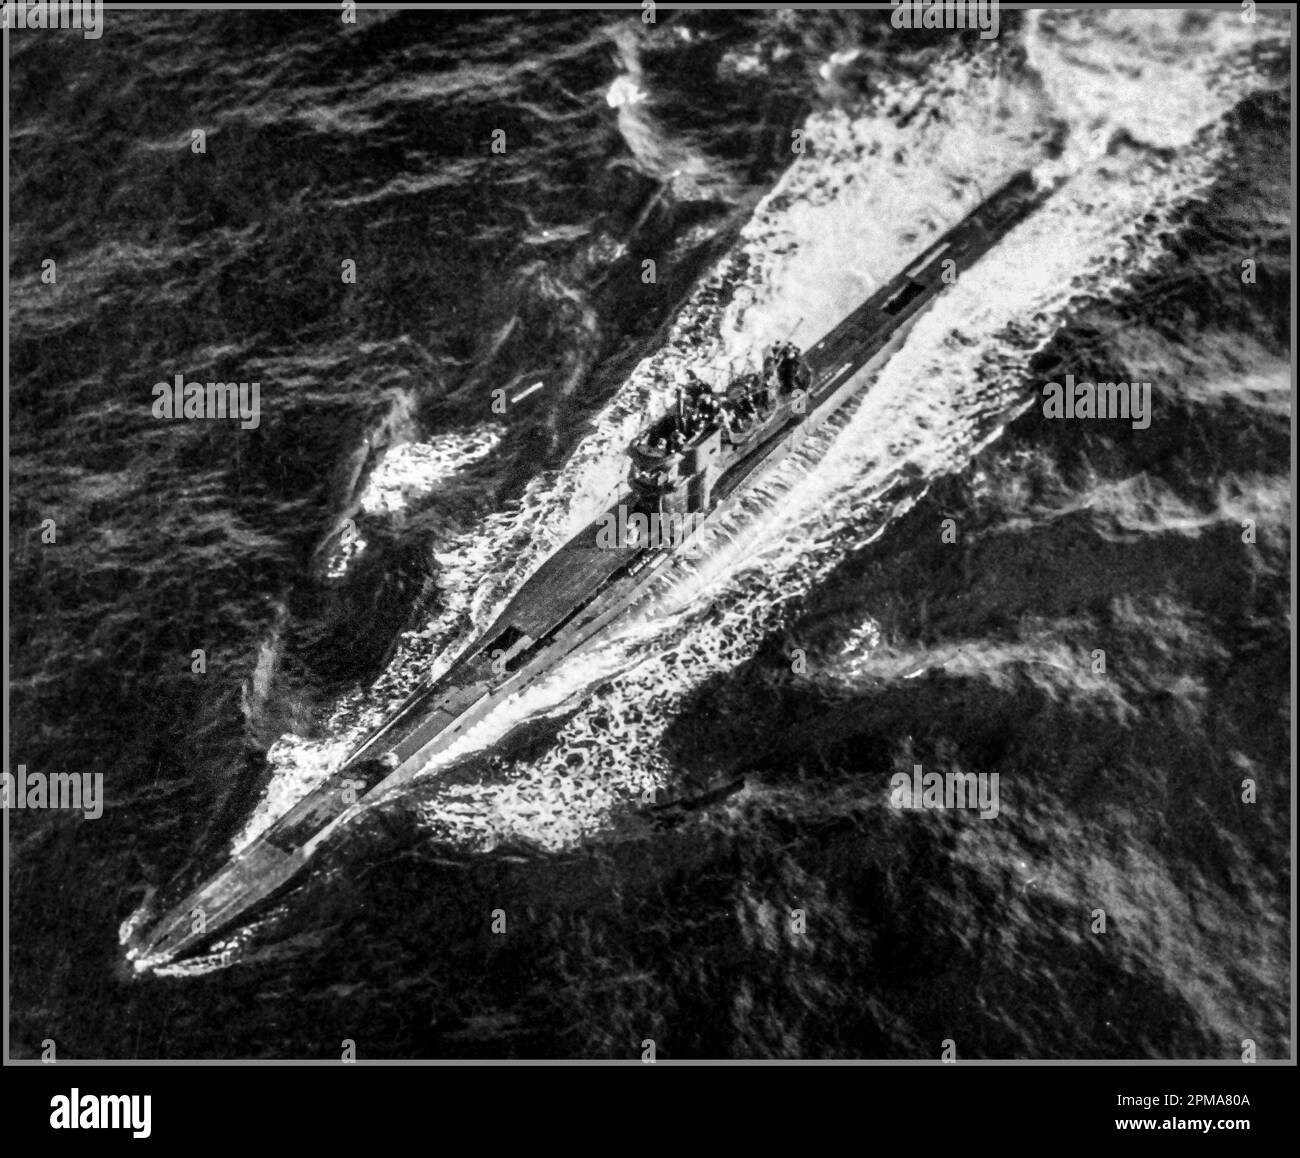 U-BOOT-Kapitulation von Nazi-Kriegsmarin-deutschen U-Booten im Zweiten Weltkrieg. U-249 kapituliert am 9. Mai 1945. U-249 war das erste U-Boot, das nach der Kapitulation Deutschlands kapituliert hat. Das U-Boot übergab sich einem PB4Y-1 ‚Liberator‘ von FAW-7 vor den Scilly Islands. Offizielle US-Regierung Navy-Foto, Stockfoto